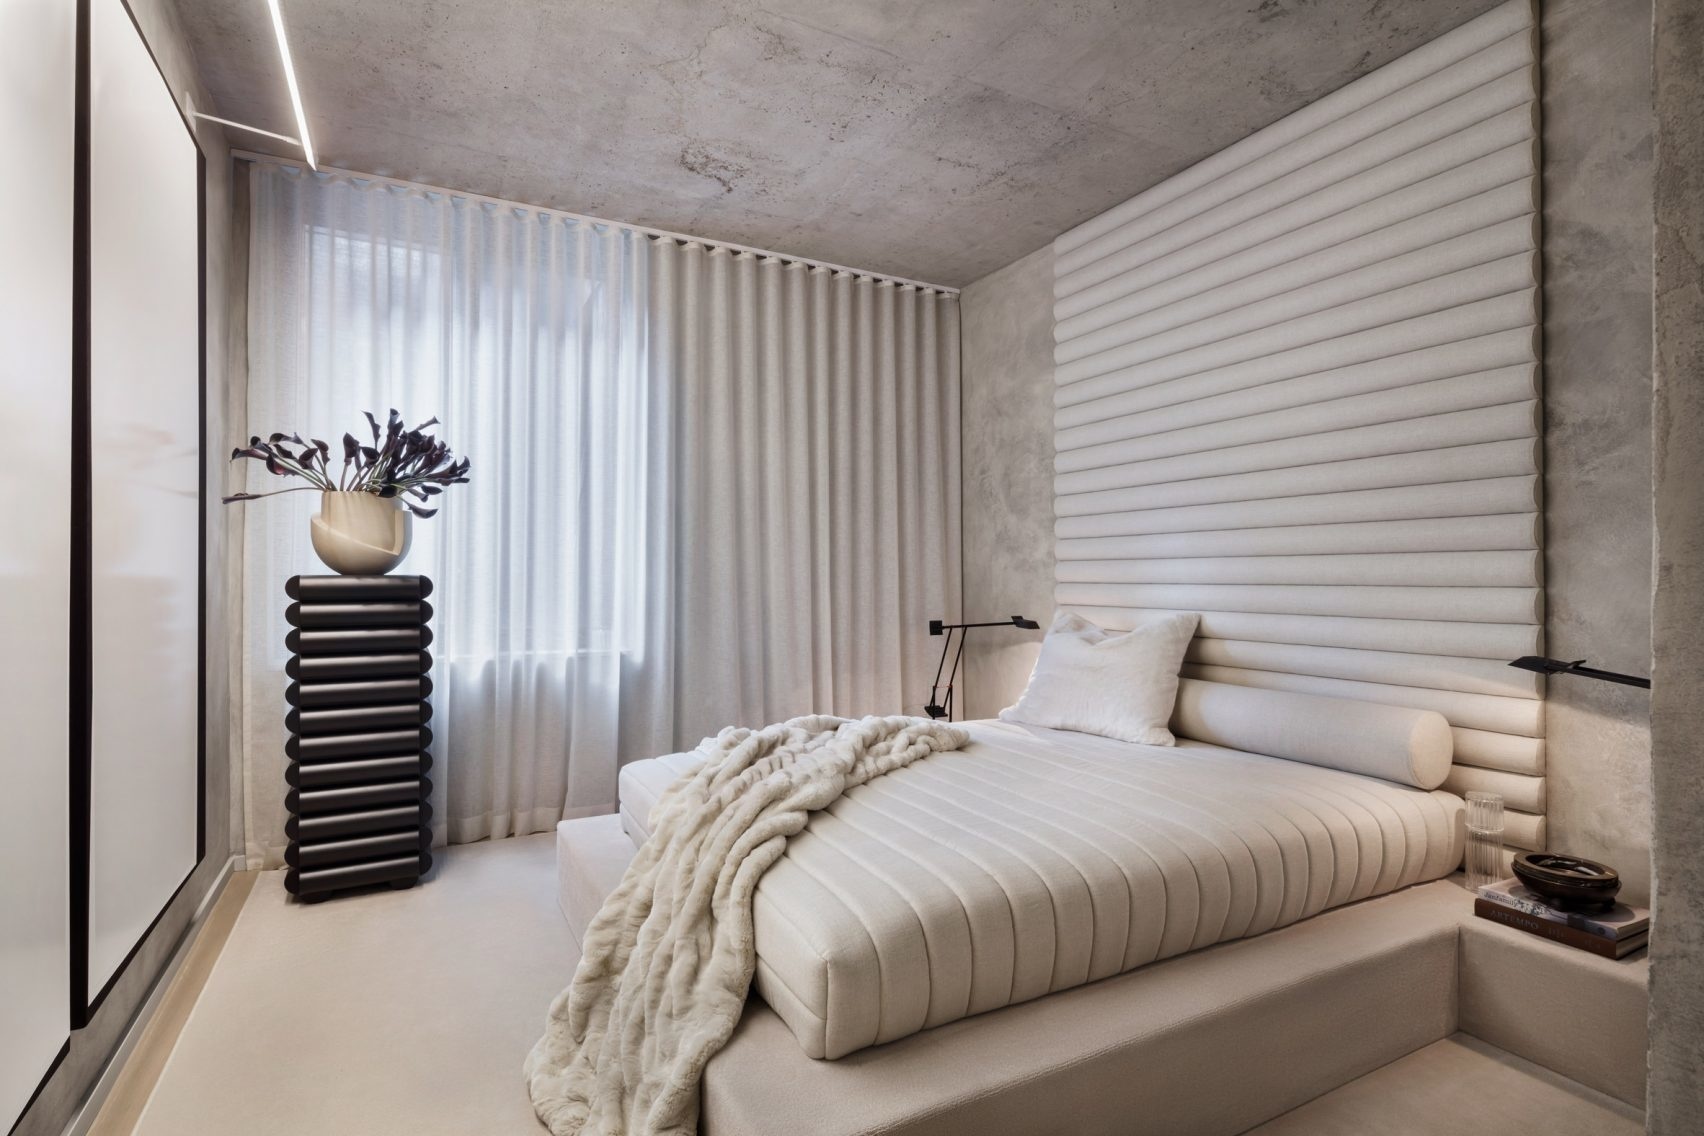 Phòng ngủ trong căn hộ ở New York được thiết kế bởi KTS Alex P. White khiến bạn thích thú ngay từ cái nhìn đầu tiên. Kiểu dáng nội thất 'gợn sóng' từ rèm che cửa sổ, bộ tản nhiệt, tường đầu giường cho đến tấm nệm trên khung giường thấp sàn cho cái nhìn hoàn hảo.